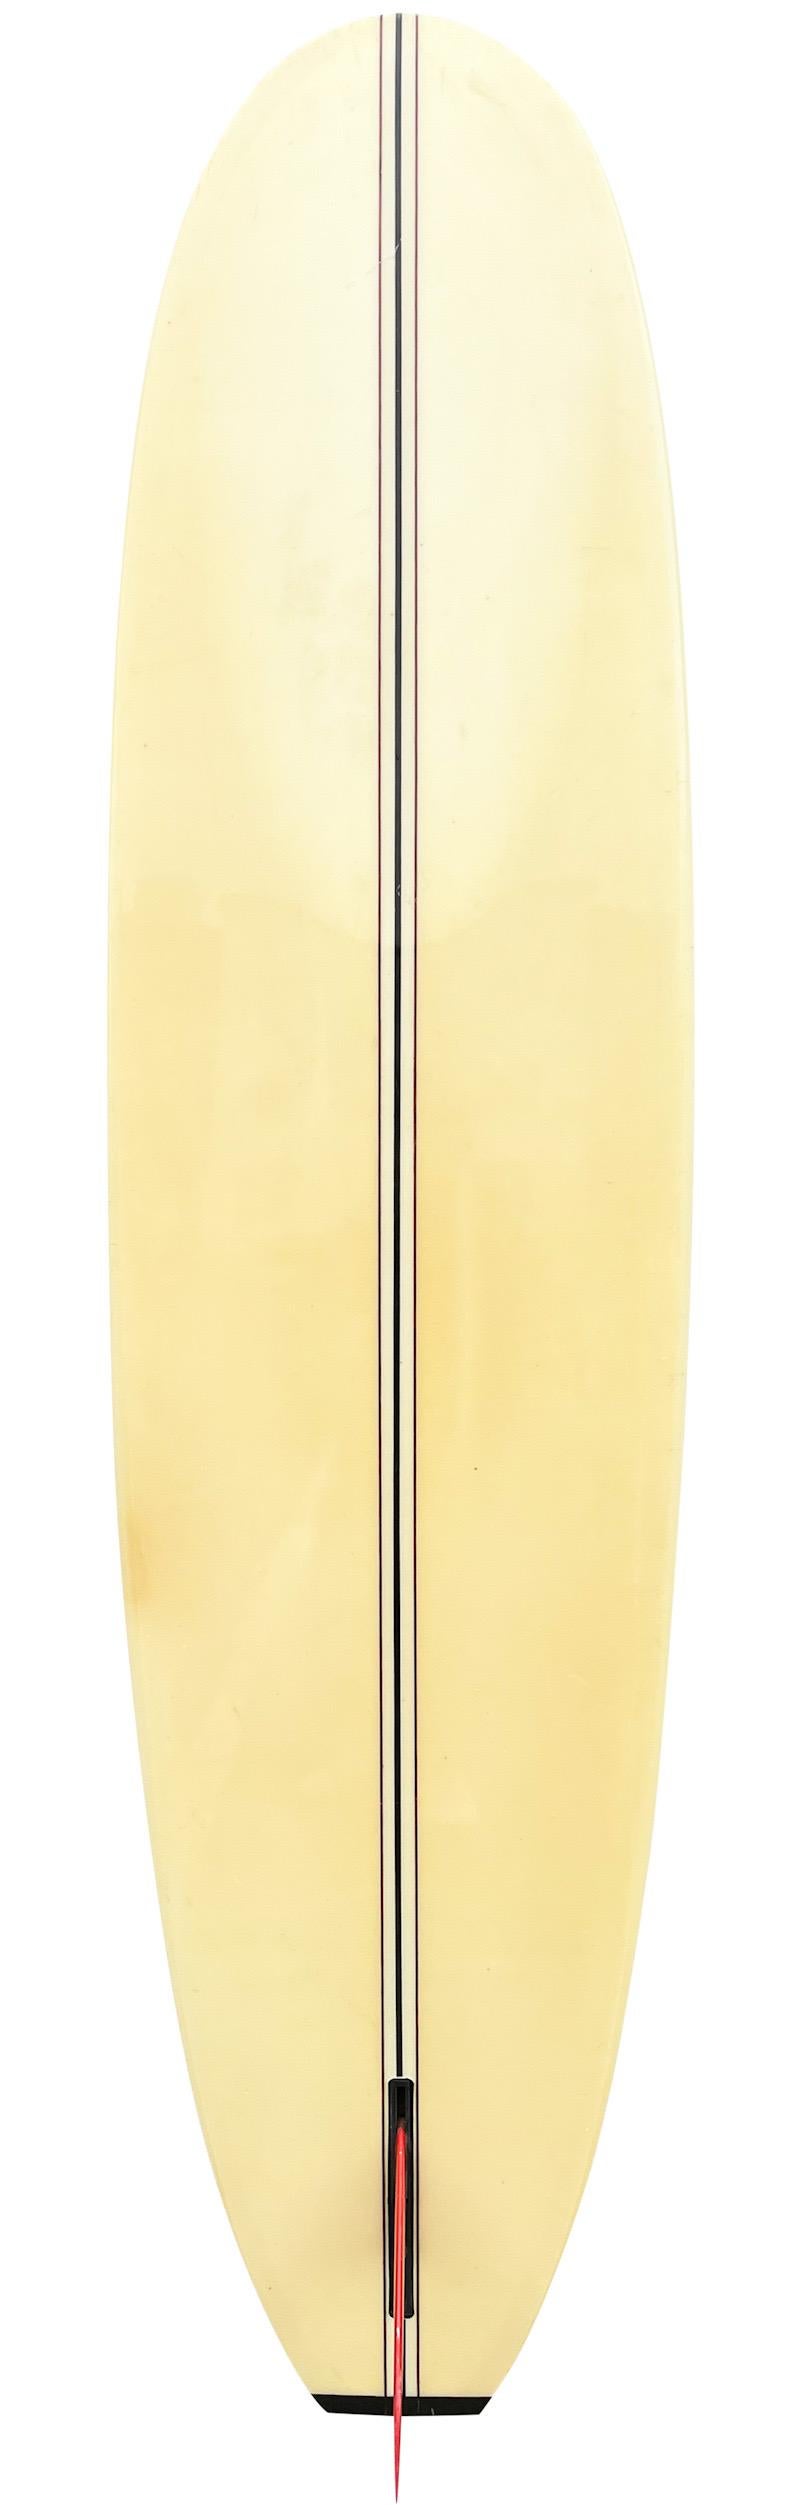 1984 David Nuuhiwa Modell-Mini-Longboard, geformt von dem verstorbenen Donald Takayama (1943-2012). Mit einem 3-Schnüren-Design mit rotem Original-Einstecker von Donald Takayama. Ein wunderschönes Beispiel für ein gut gepflegtes Vintage- Surfbrett,